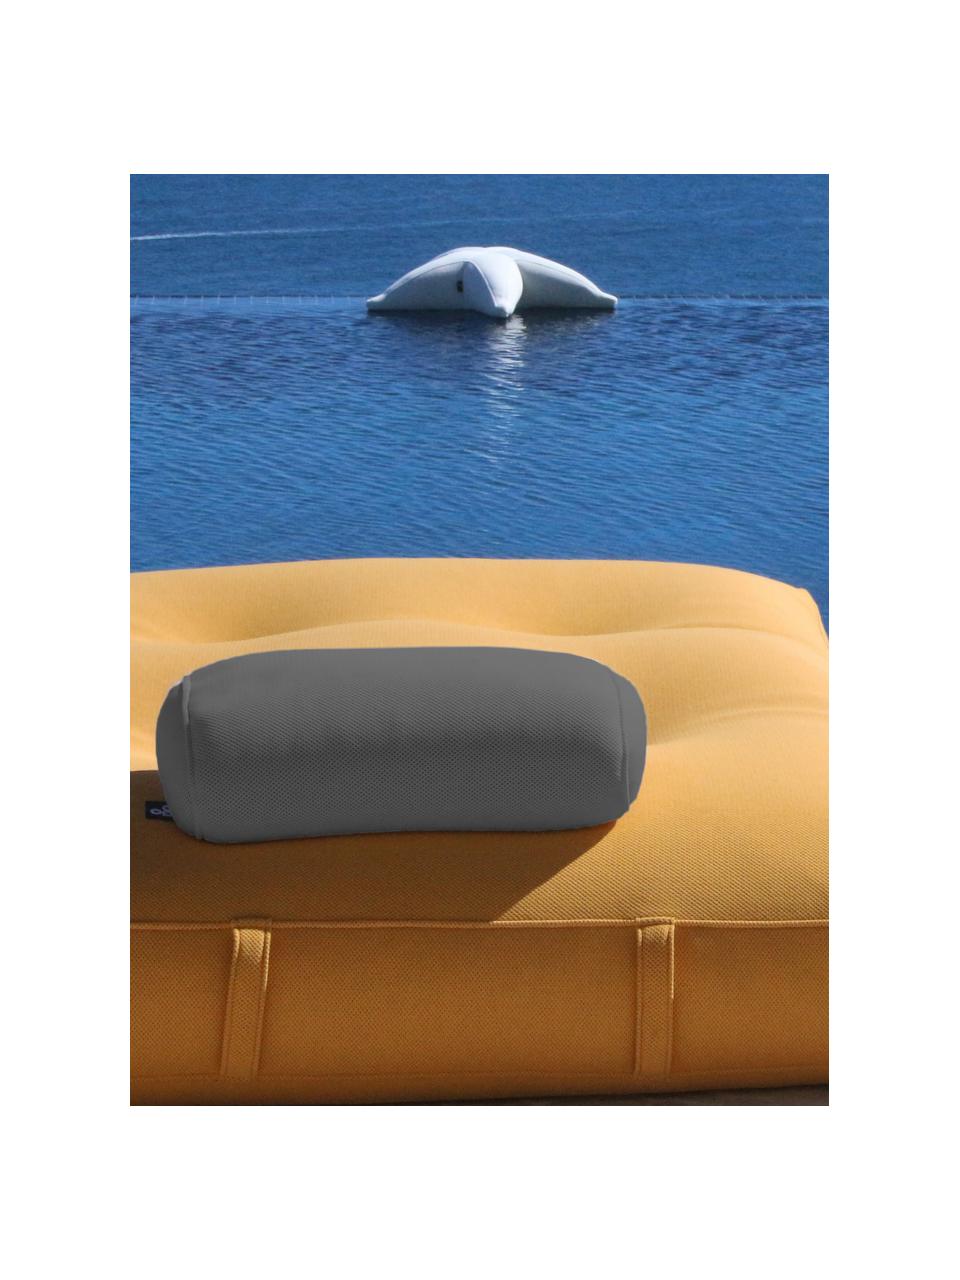 Cojín artesanal para exterior Pillow, Tapizado: 70% PAN + 30% PES, imperm, Gris oscuro, An 50 x L 30 cm